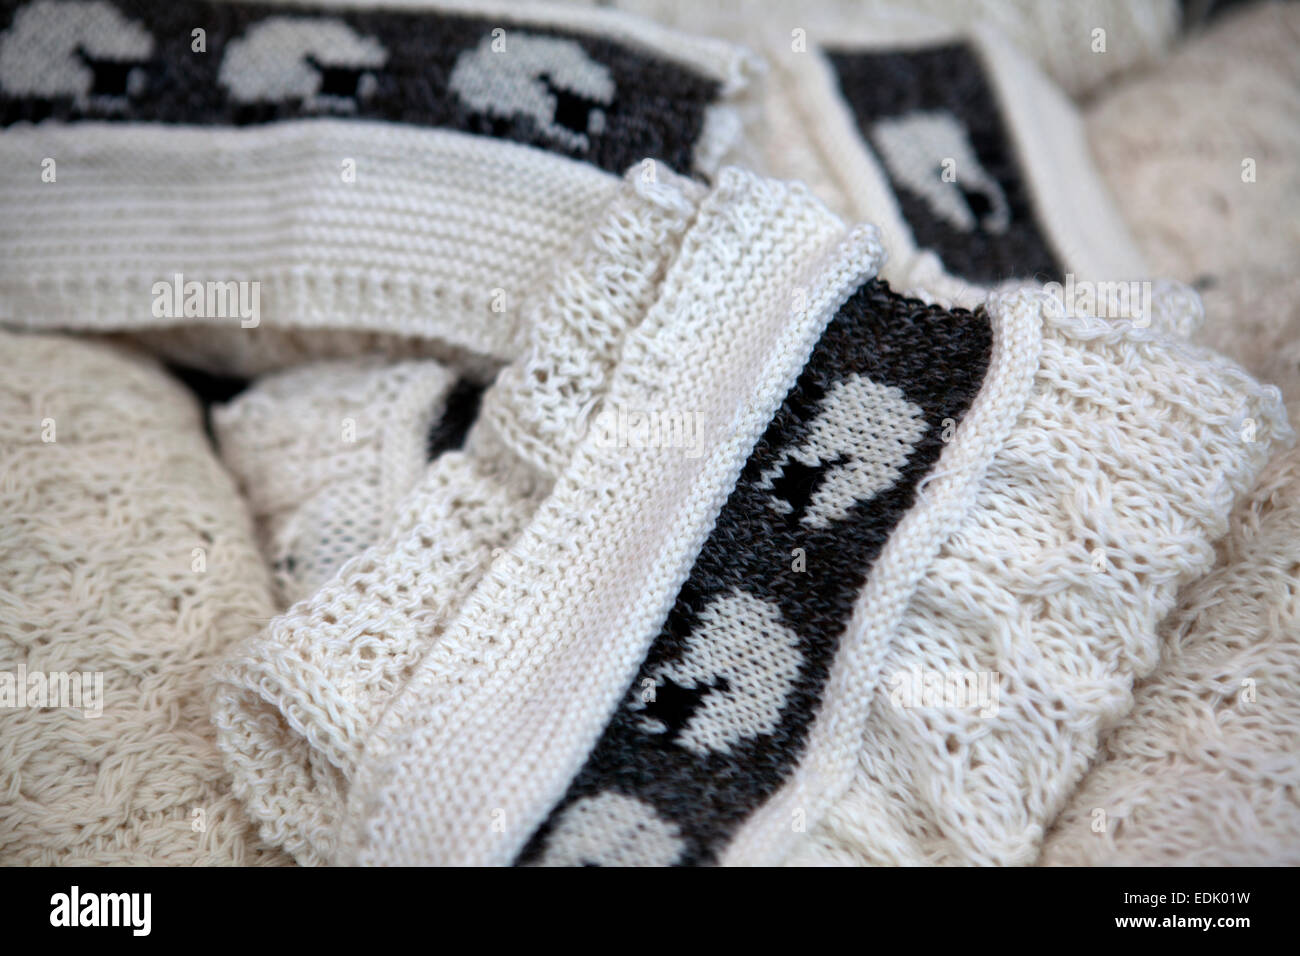 Nahaufnahme Detail aus Schafwolle Schals mit Schaf-Design. Verkauft als Andenken auf der Royal Mile in Edinburgh, Schottland. Stockfoto